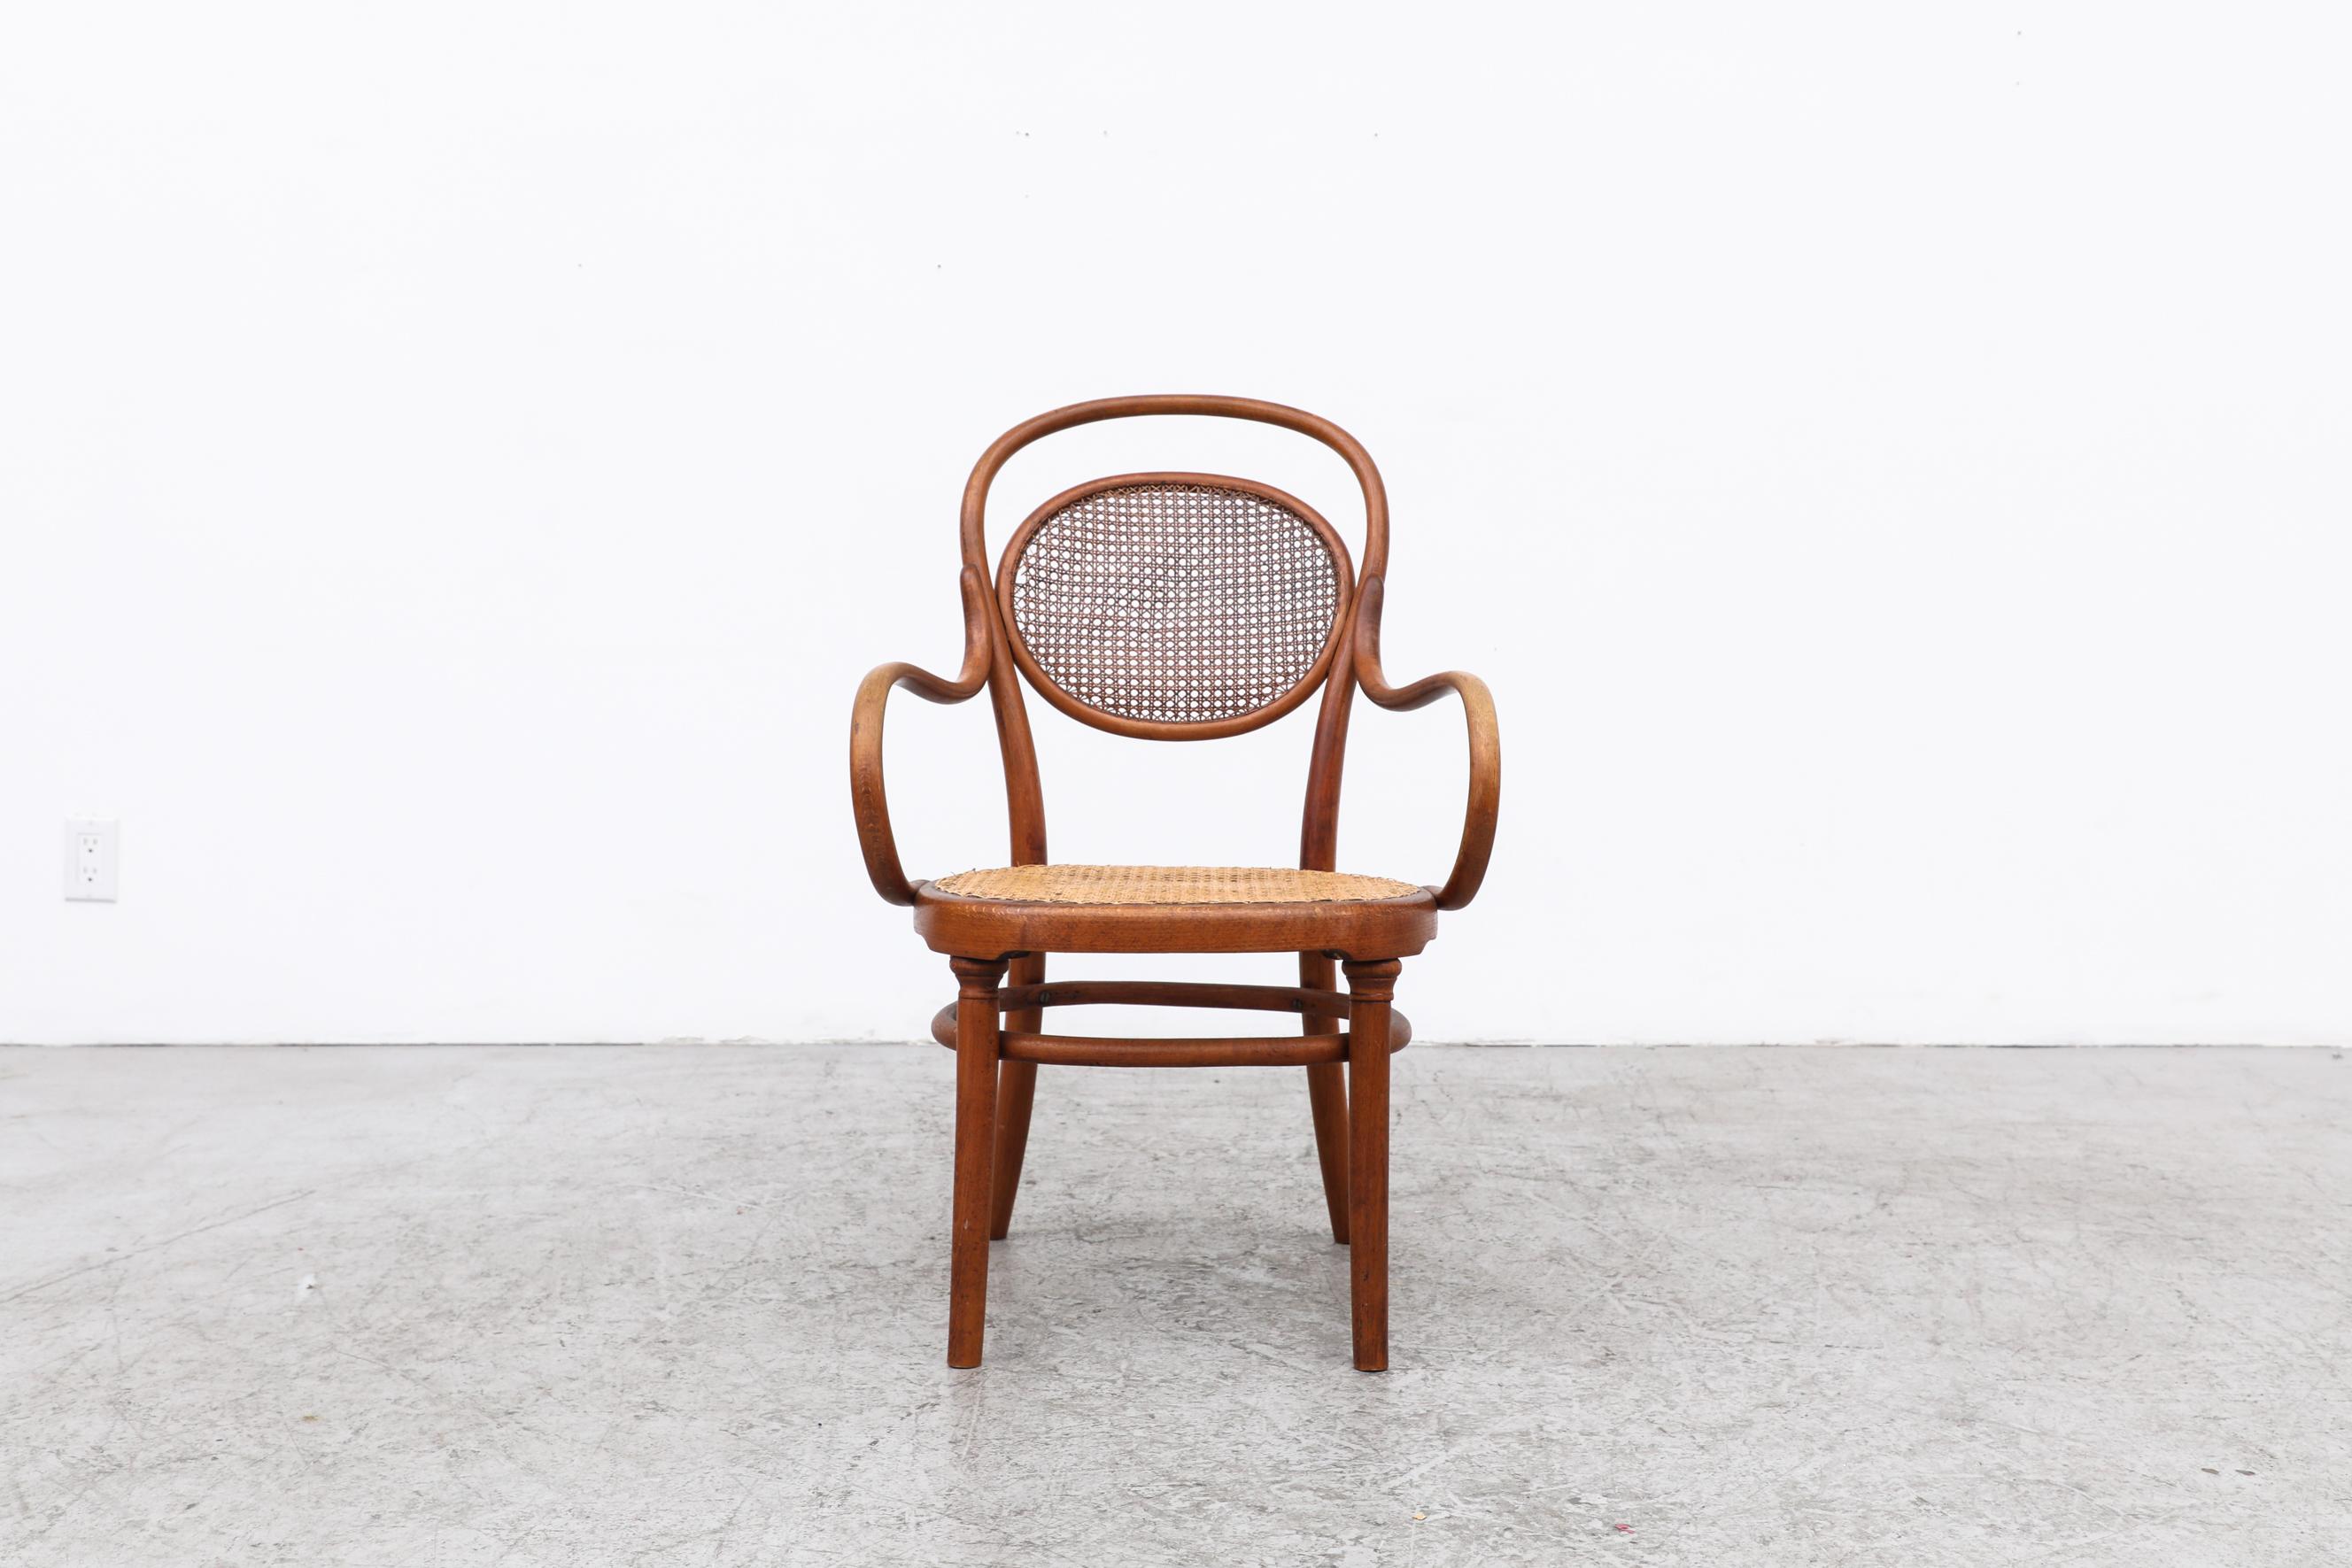 Rare et ancien fauteuil Thonet avec assise cannée et accoudoirs en bois courbé. Cette chaise a au moins 104 ans et a été fabriquée entre 1891 et 1919. Il est dans son état d'origine avec quelques traces de patine et d'usure visibles, notamment des